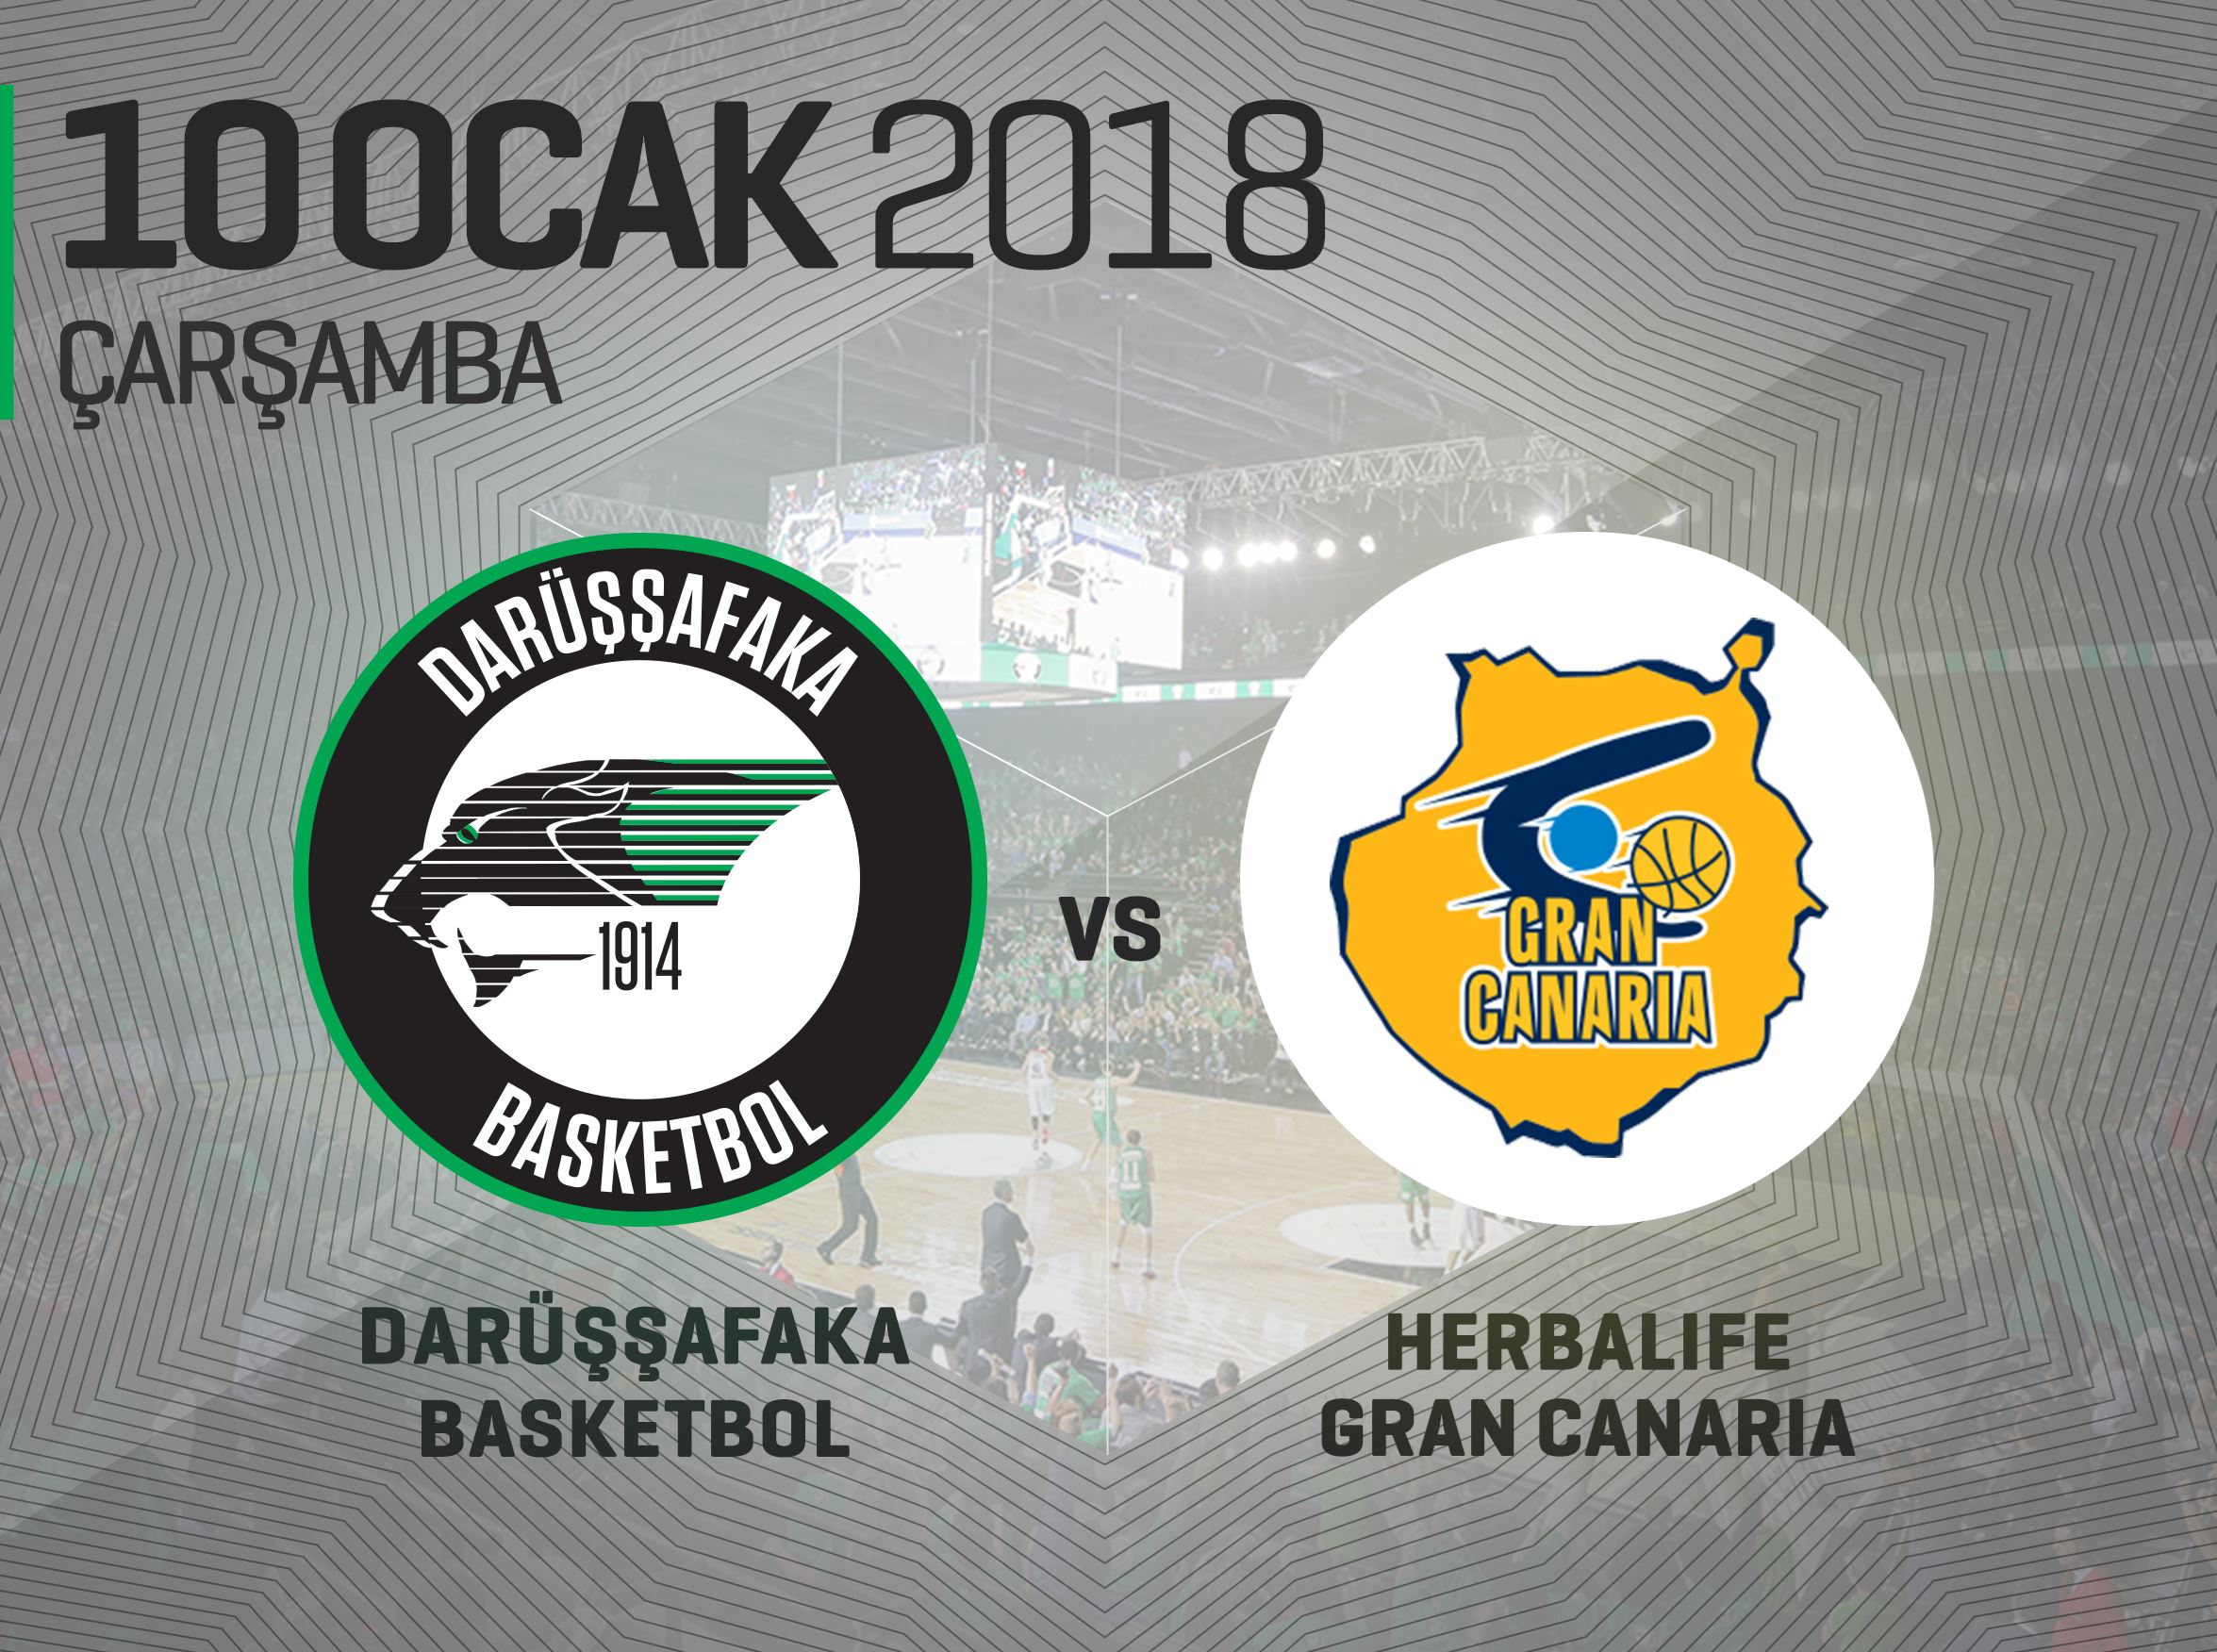 Darüşşafaka Basketbol – Herbalife Gran Canaria